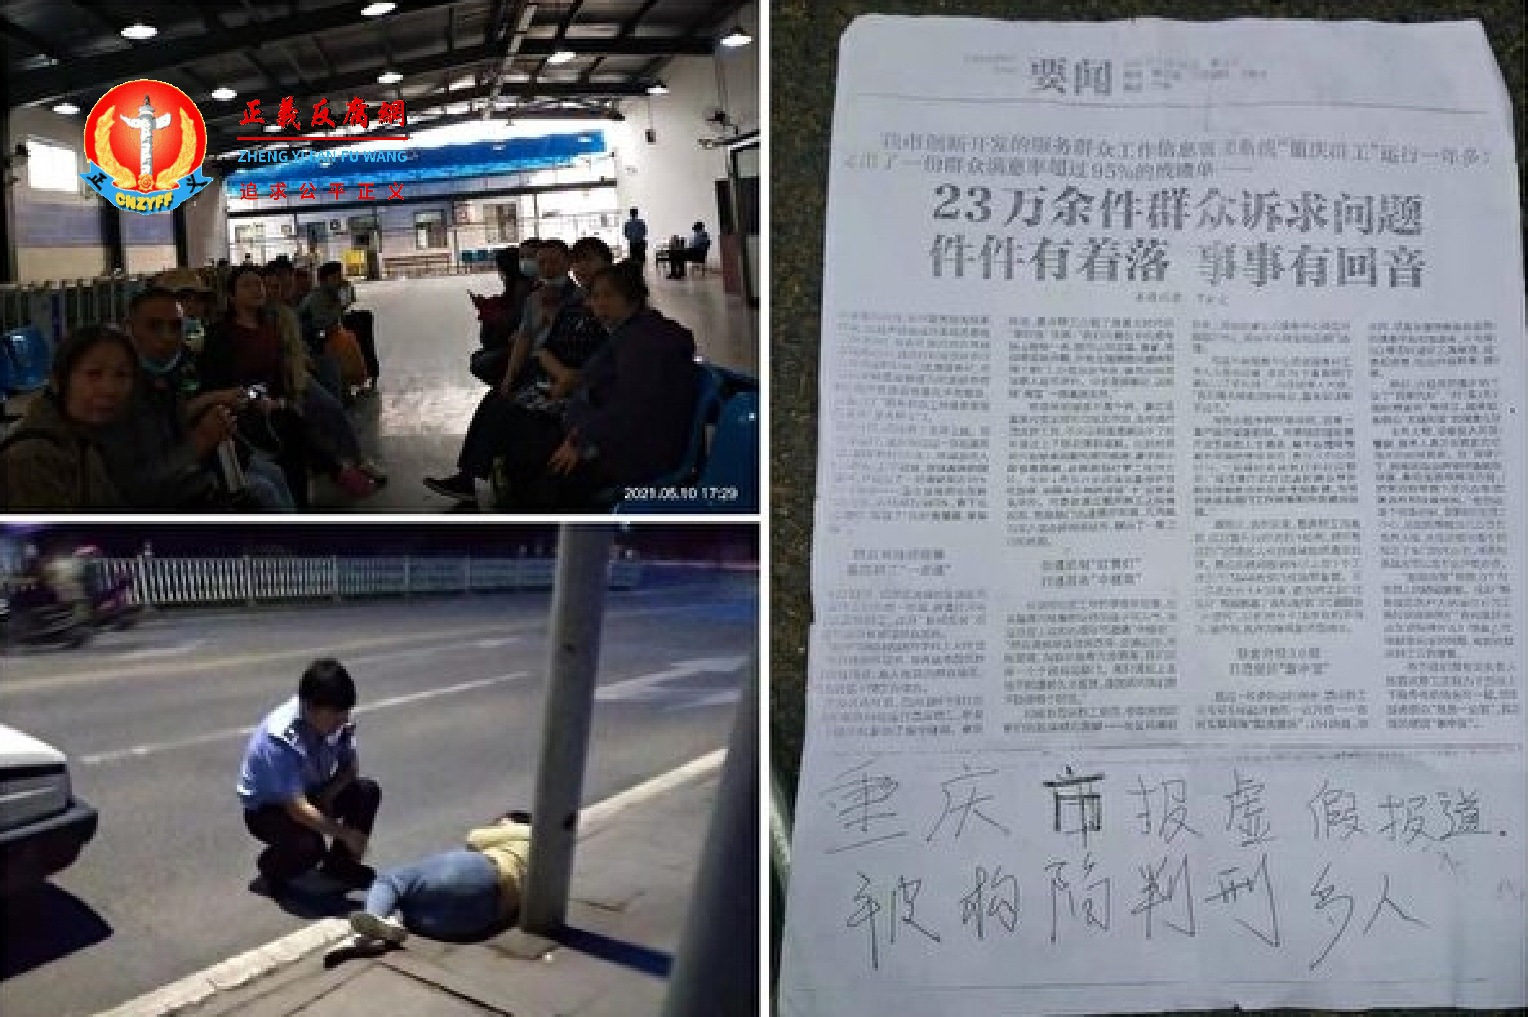 逾30名重庆访民进京举报重庆市政府所称“信访案件已清仓见底”是个谎言。但都被北京警方查身份证后扣押在派出所。.png